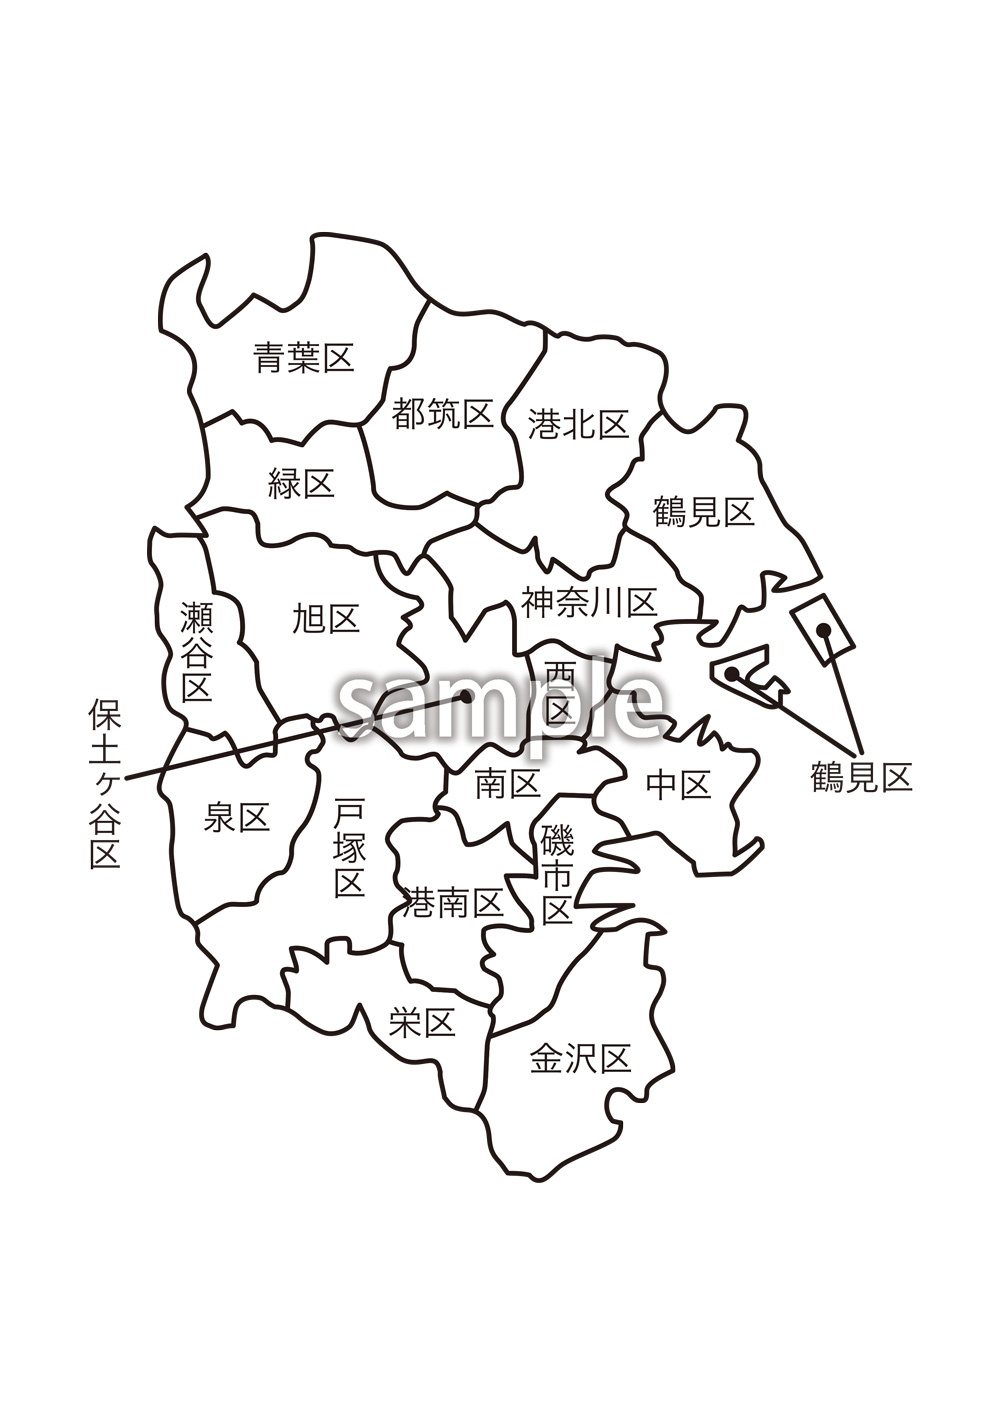 一般社団法人クリエイターズの素材集 神奈川県横浜市区名入り地図の素材をjpg Png形式でダウンロードできます 会員限定のコンテンツです